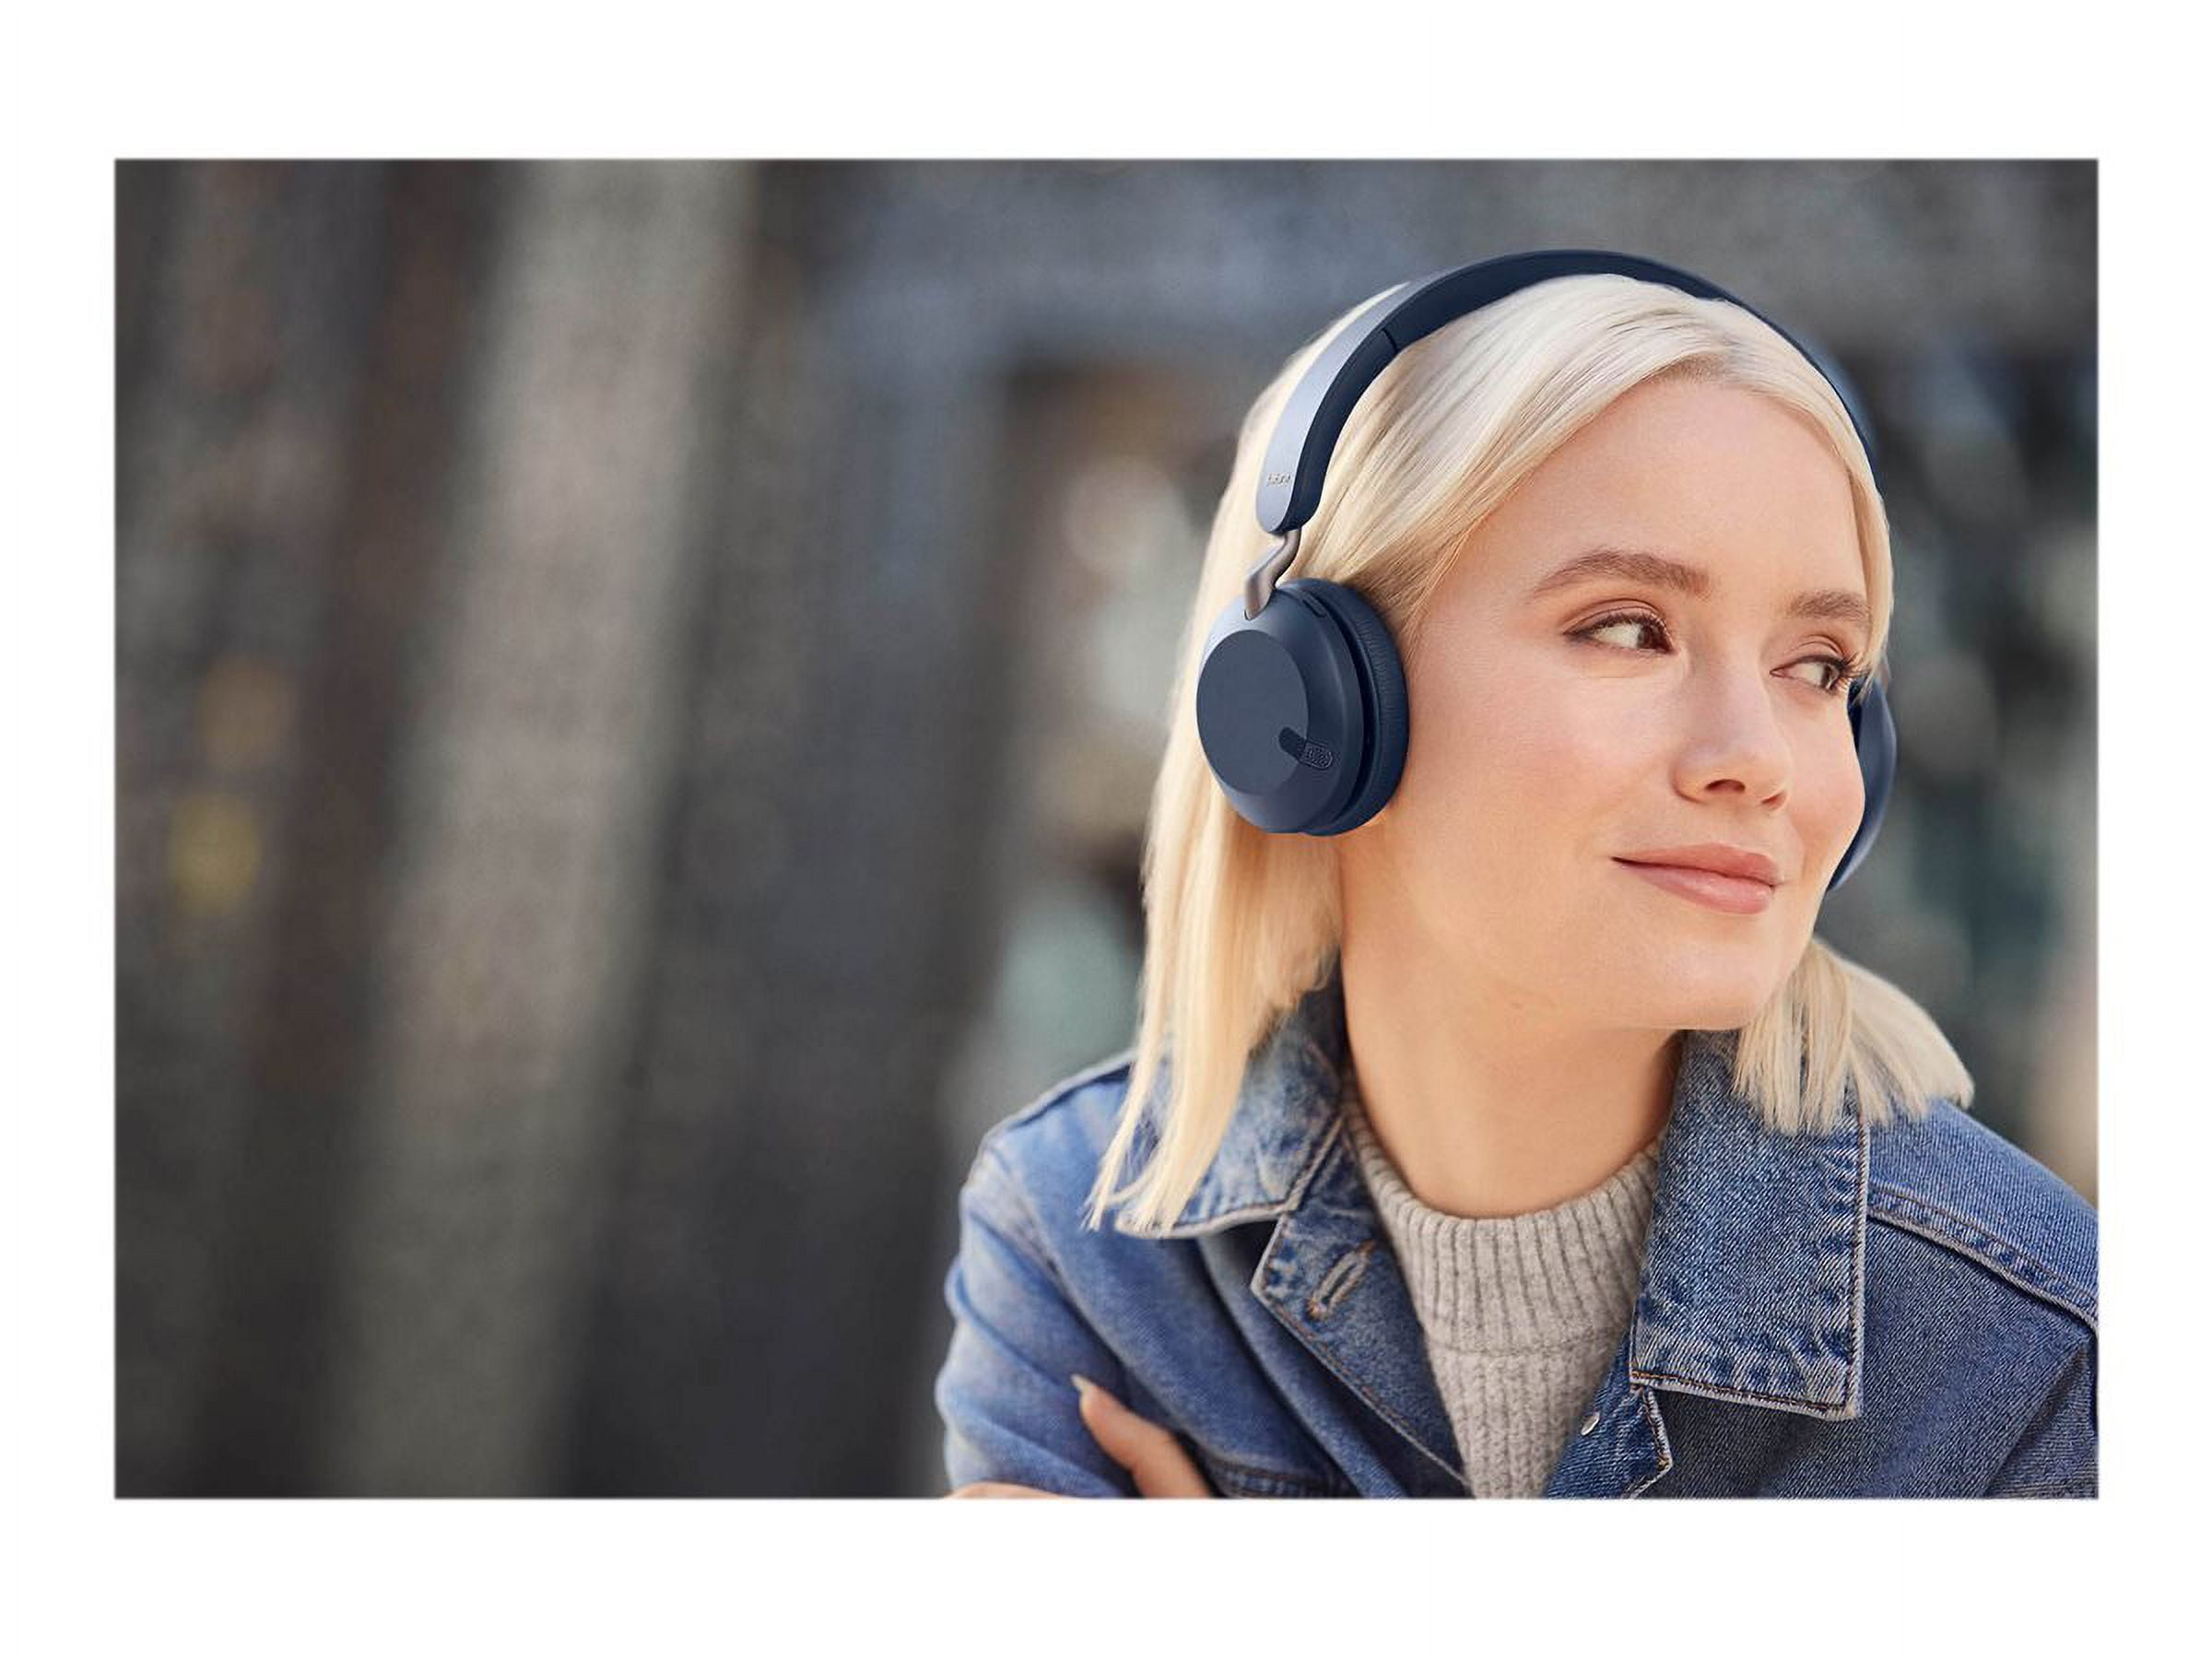 Jabra Elite 45h trådlösa on-ear Headphones - Kompakta, vikbara